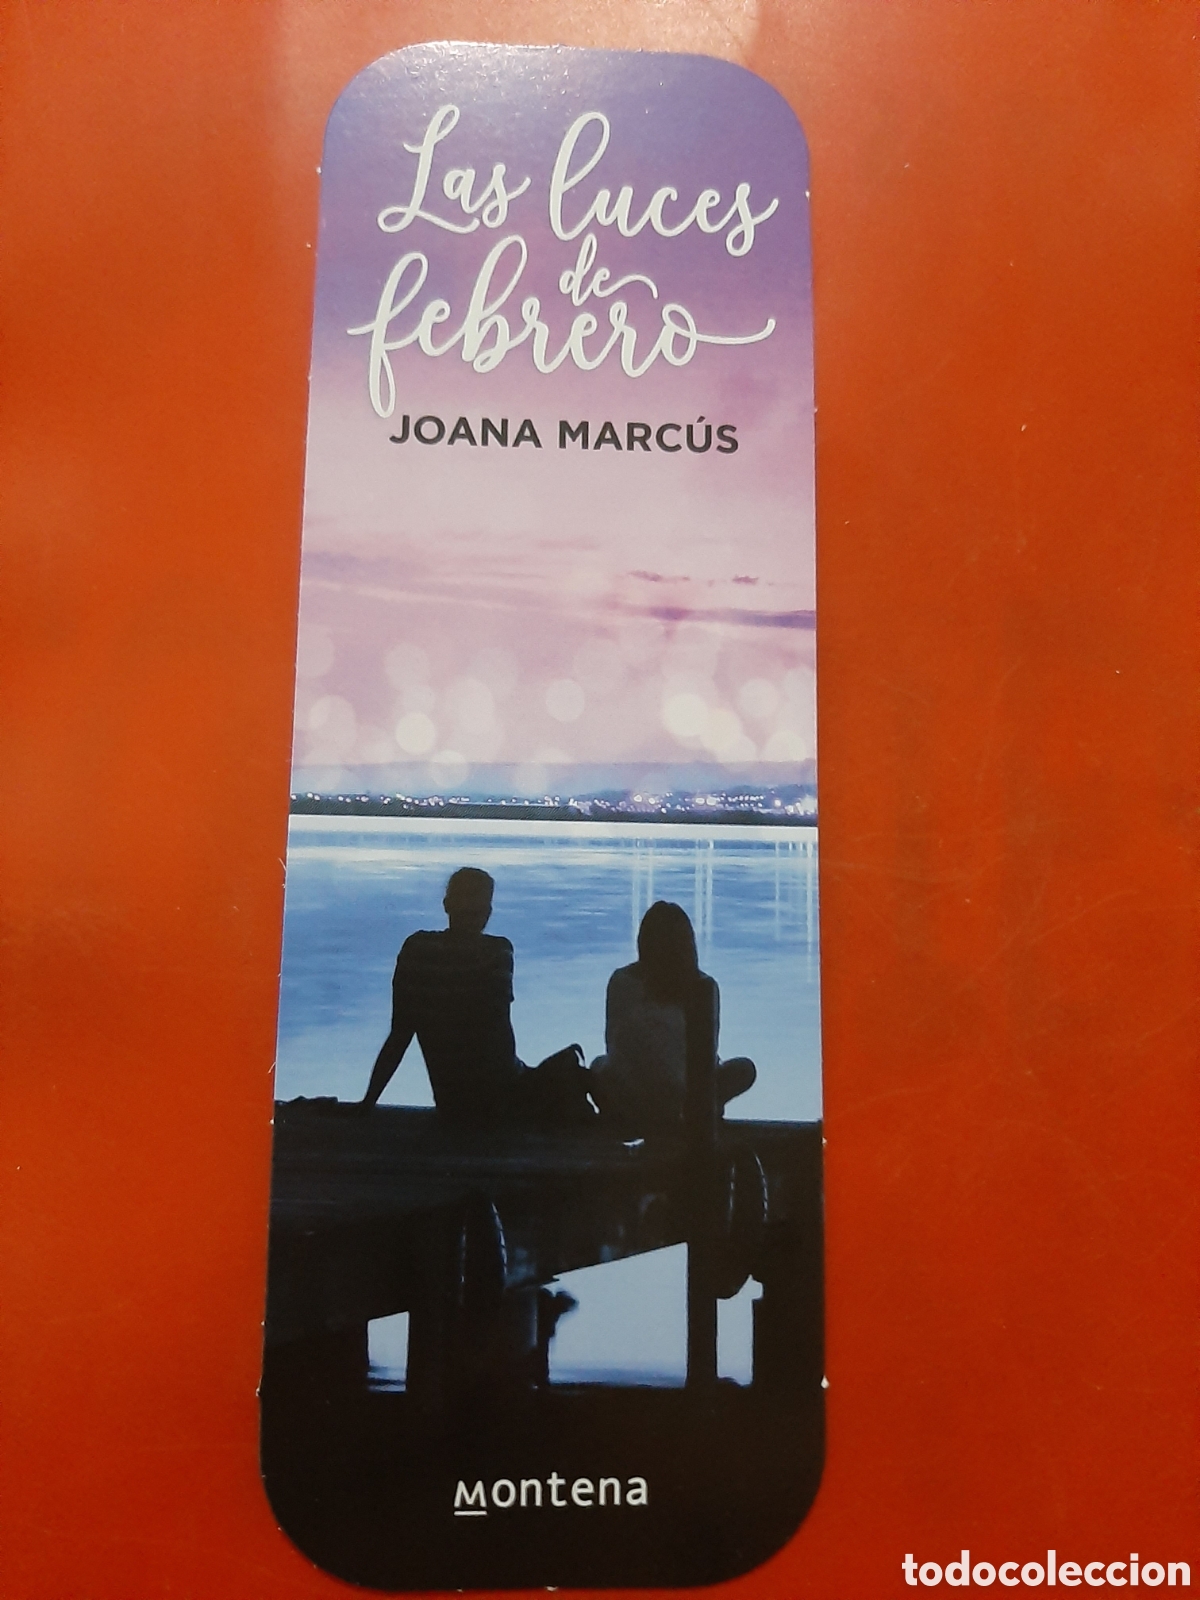 marcapaginas joana marcús, las luces de febrero - Buy Antique and  collectible bookmarks on todocoleccion